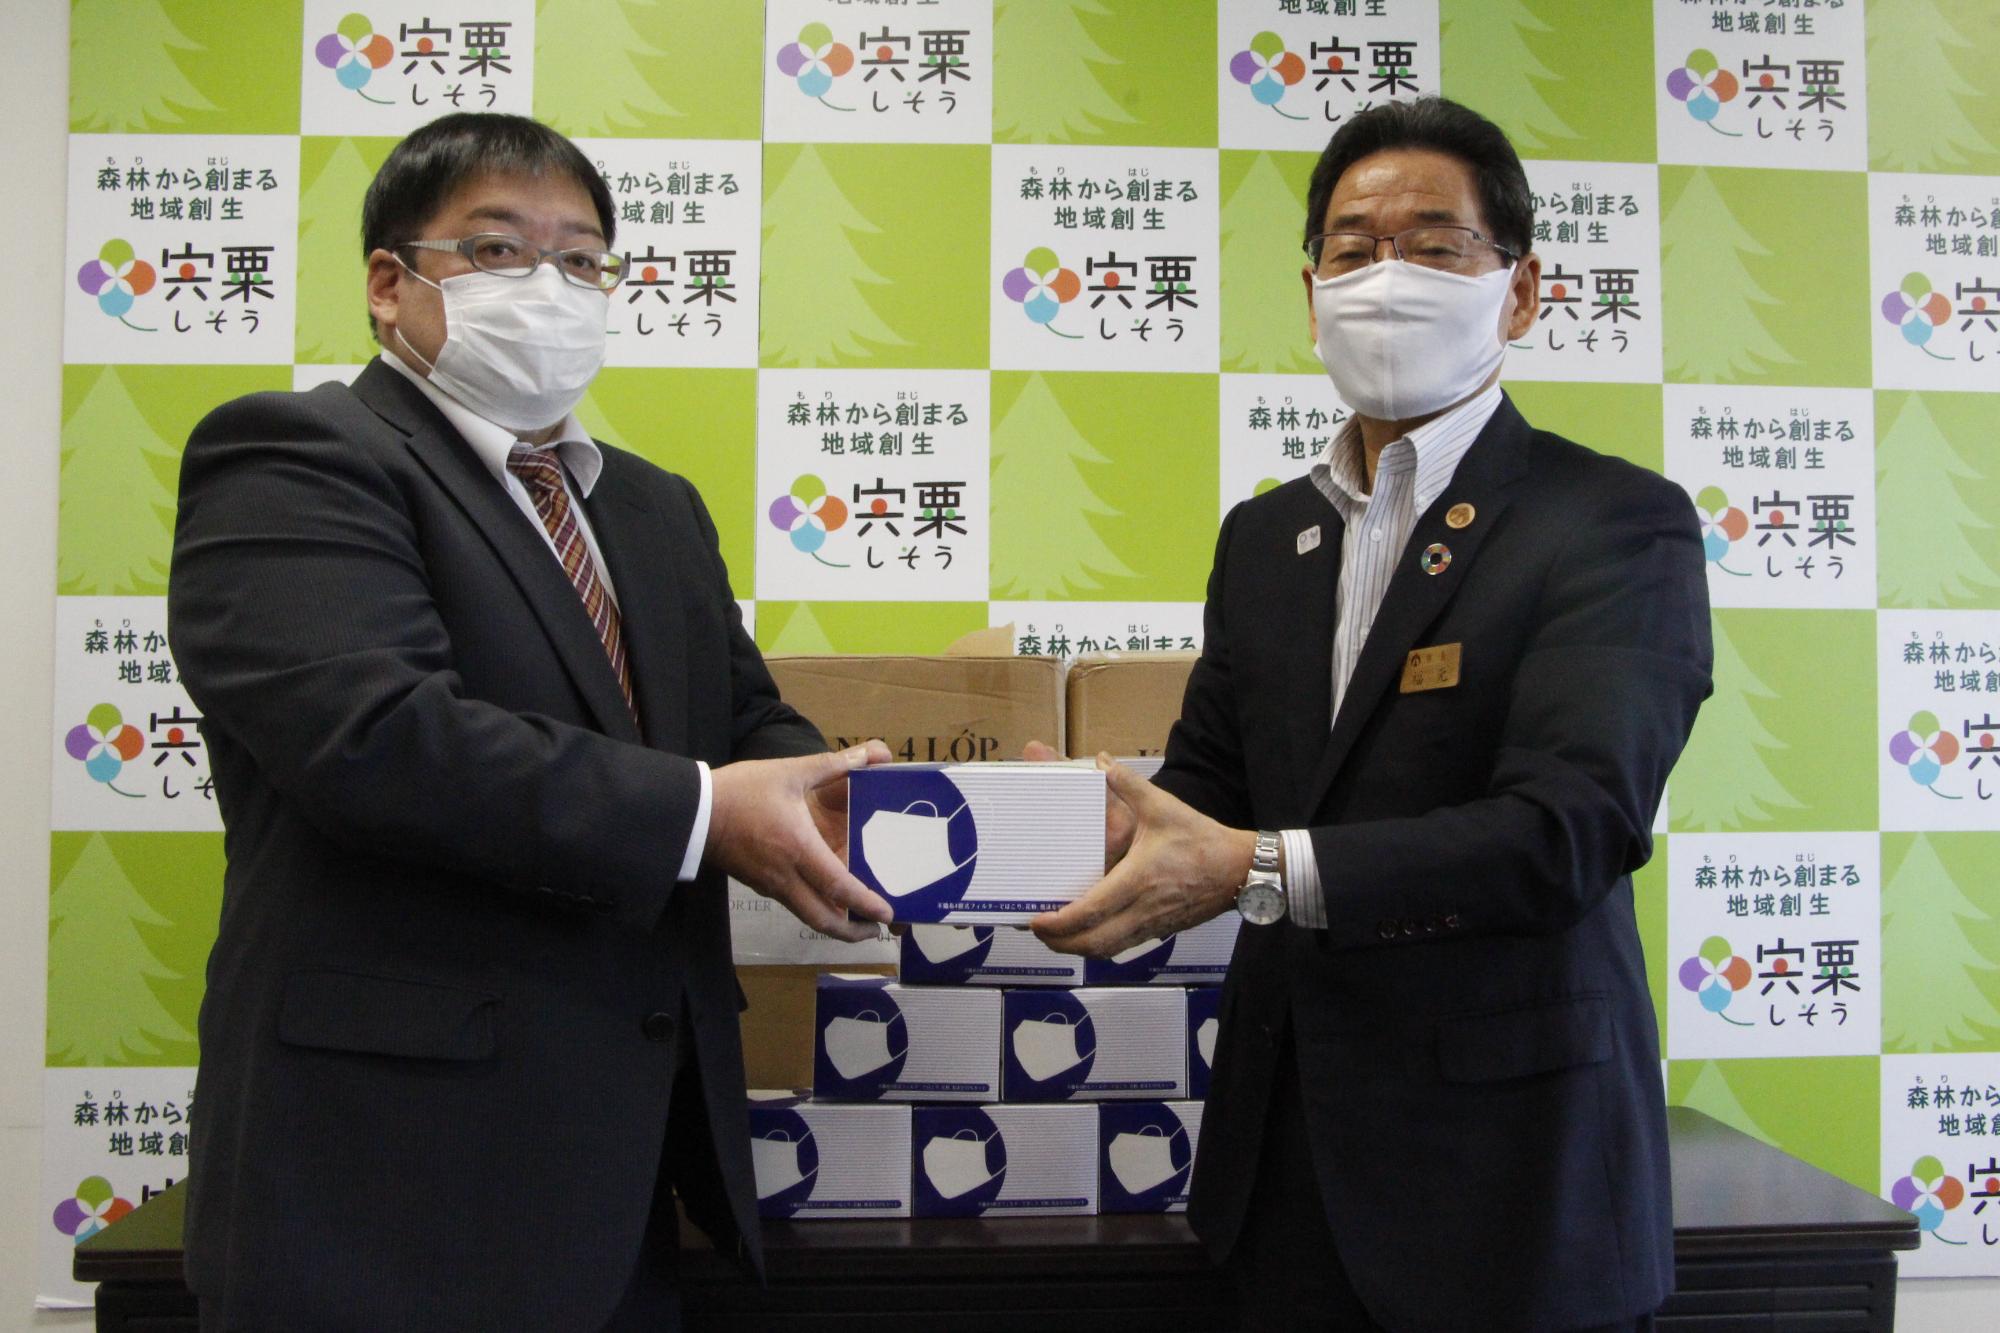 福元市長が株式会社スポーツクラブ報徳の伊藤さんからマスクを受け取っている写真